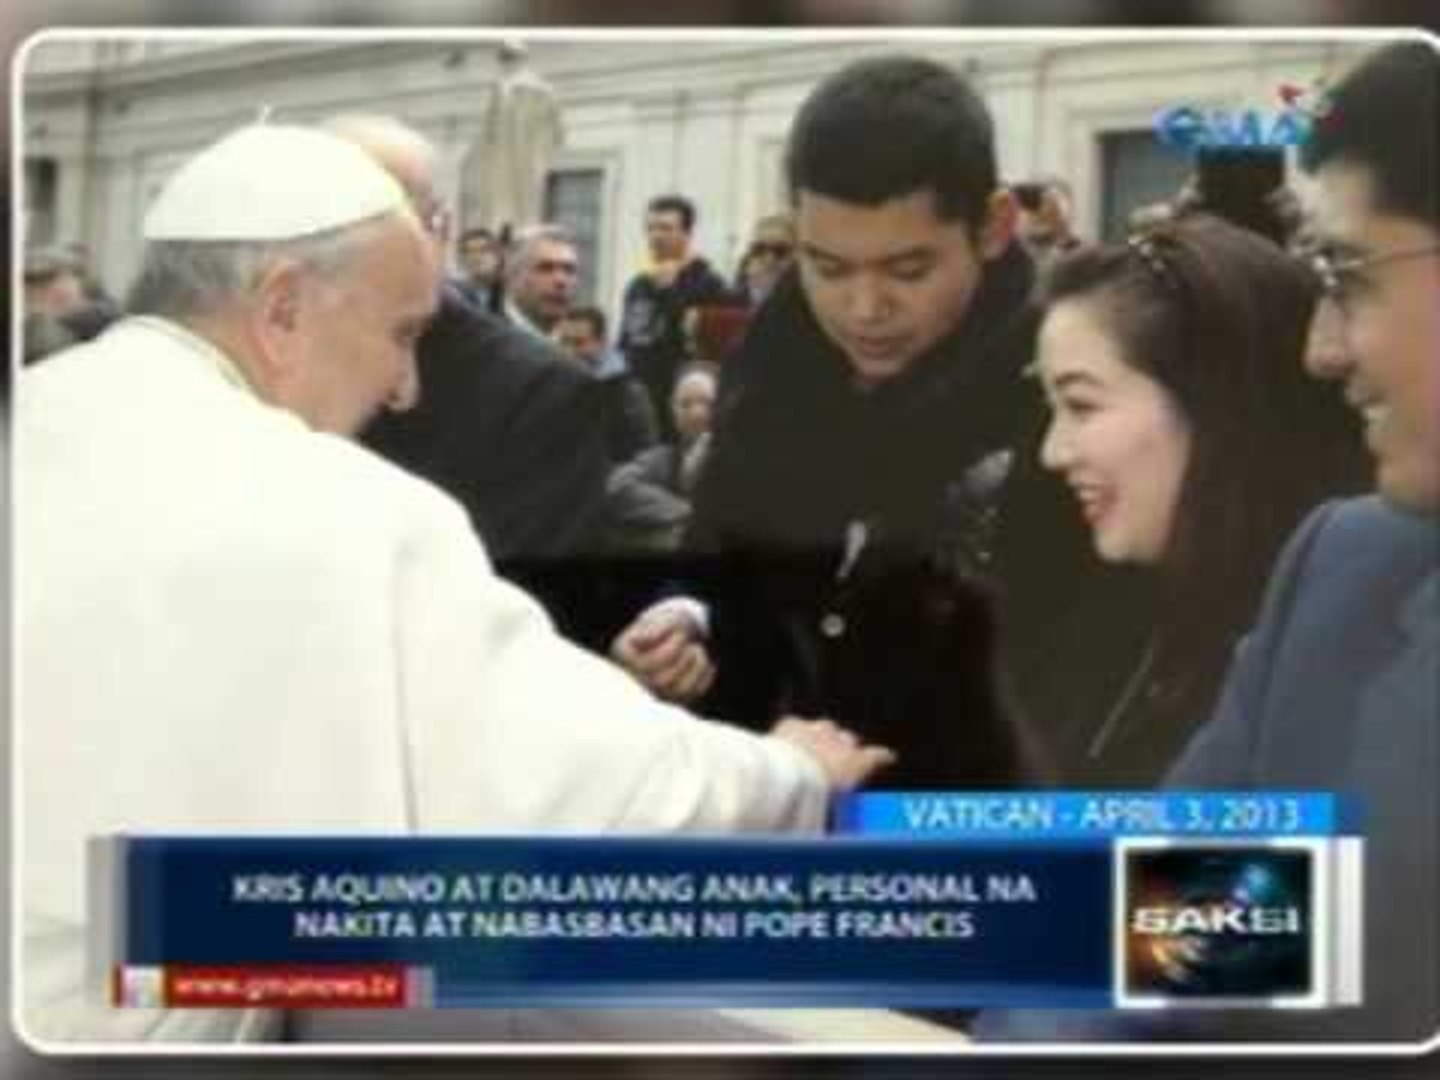 Saksi: Kris Aquino at dalawang anak, personal na nakita si Pope Francis